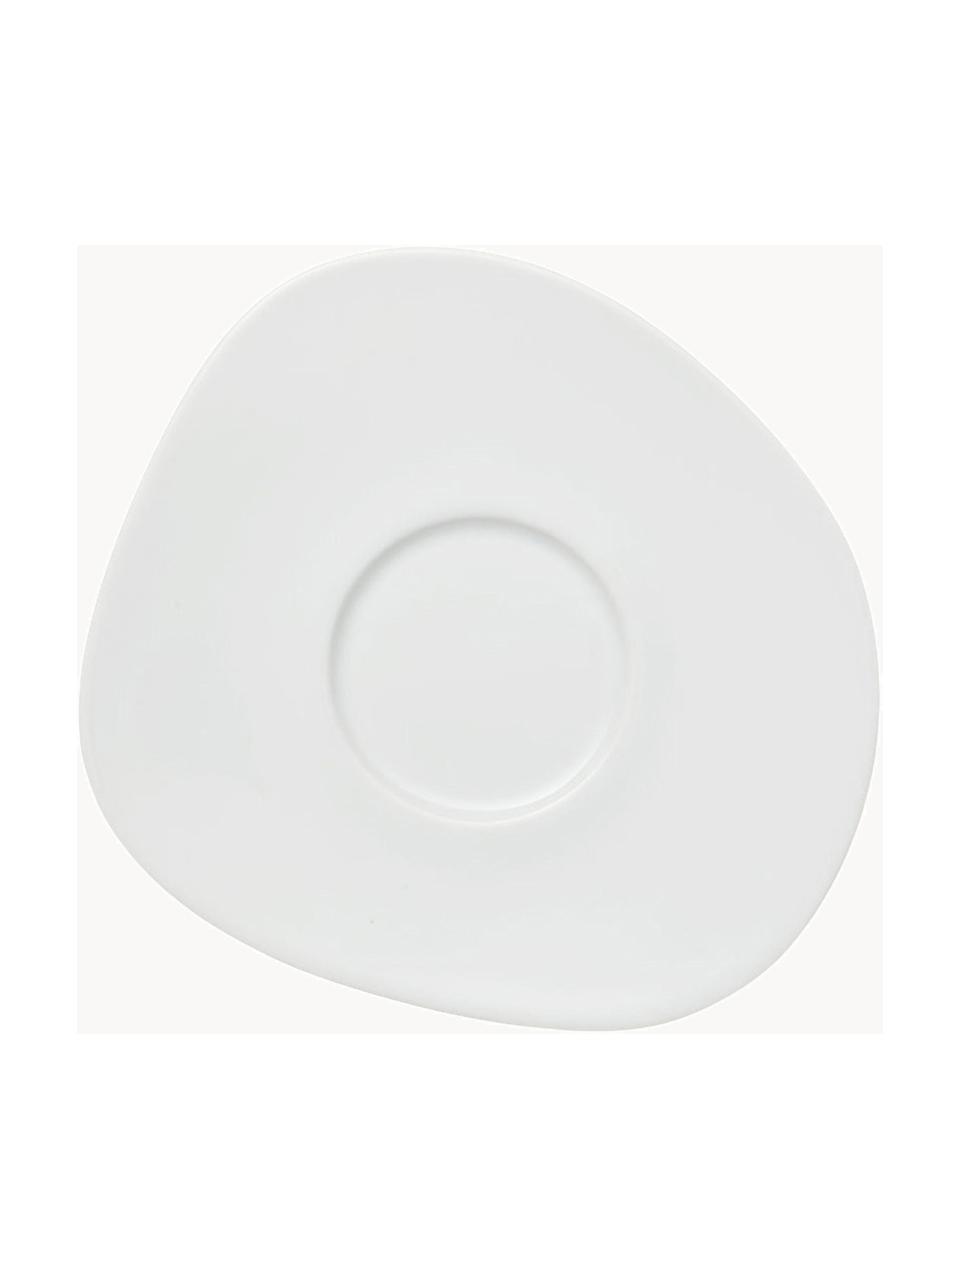 Porzellan-Untertasse Organic mit organischem Rand, Hartporzellan, Weiß, L 18 x B 16 cm